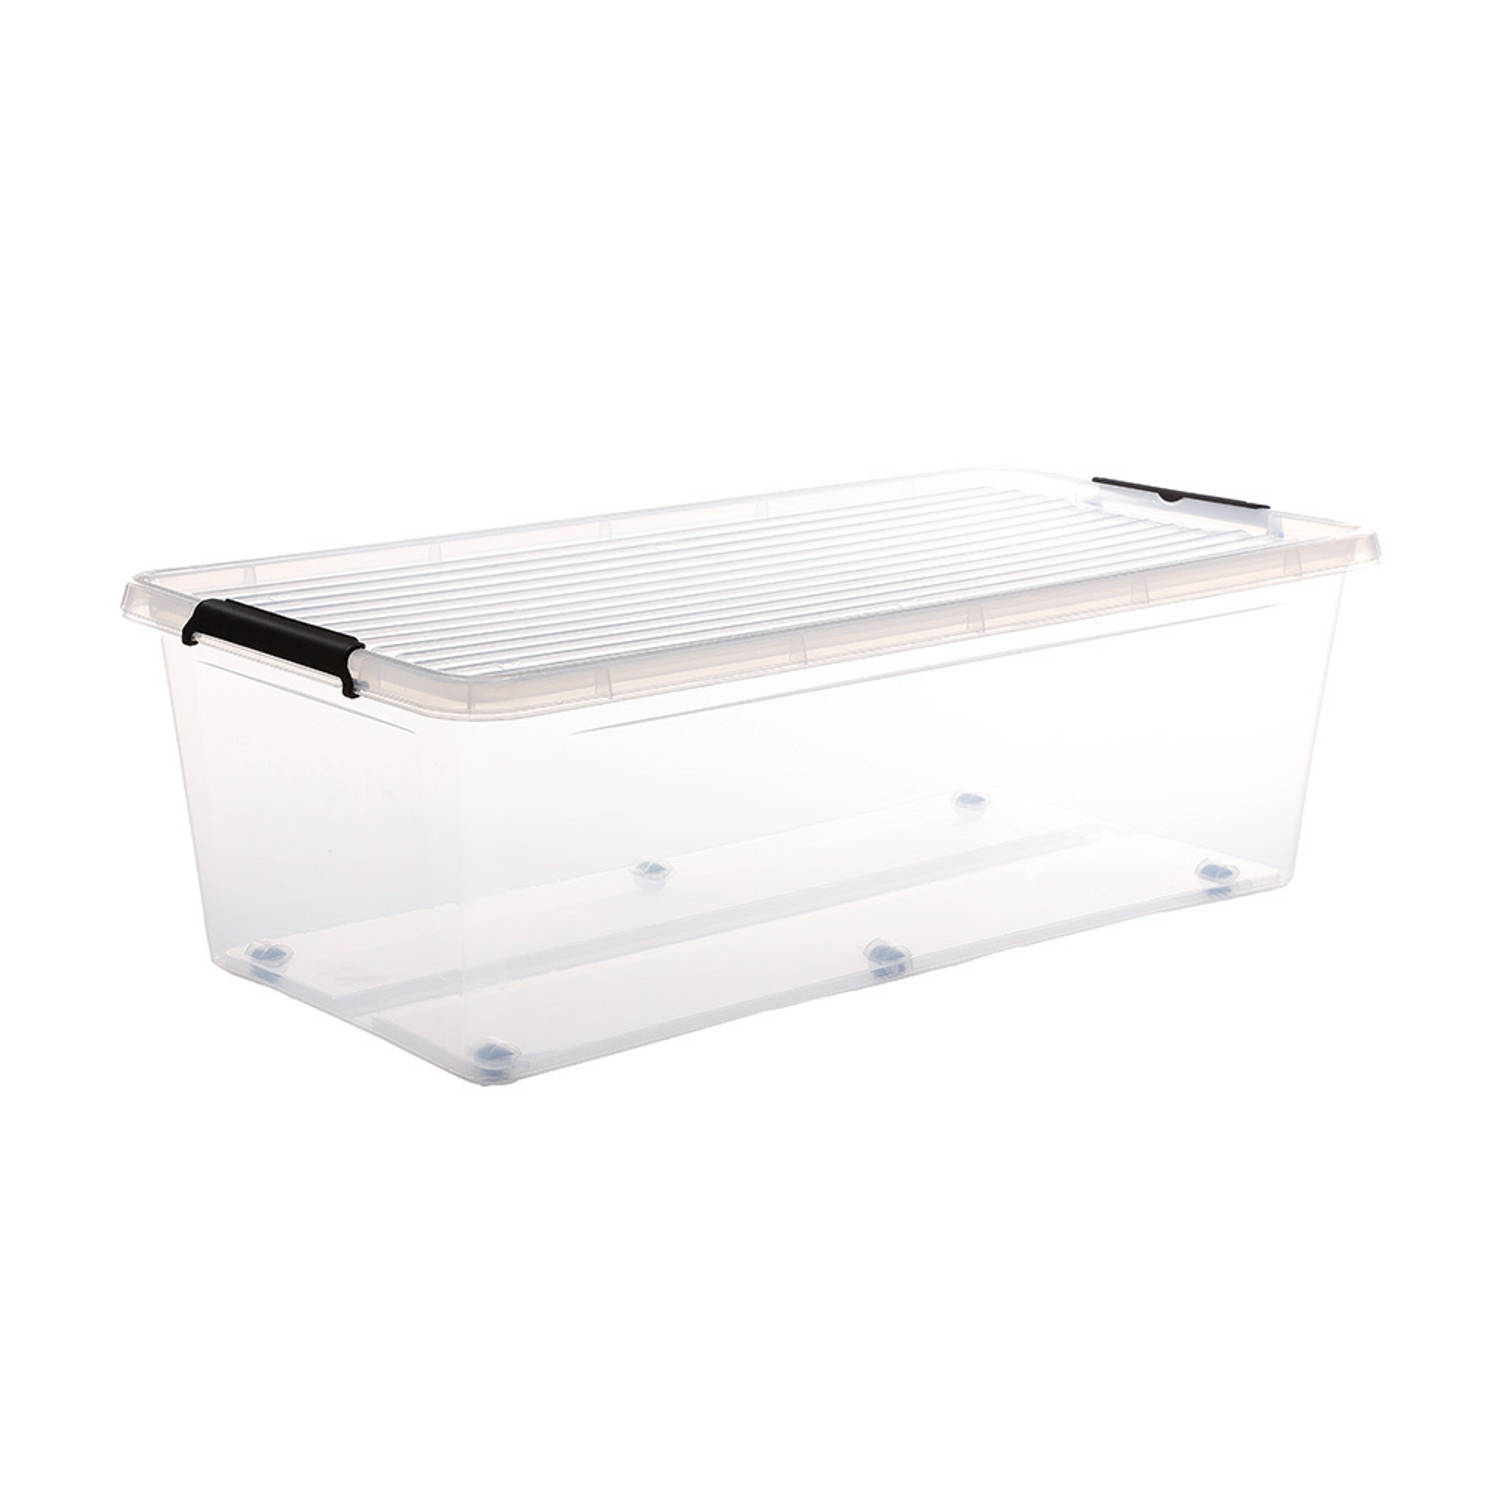 Five® Doorzichtige opbergboxen met clipsluiting 55 liter - 55 liter - rolbaar (76 x 39 x 25 cm) - Stapelbaar, Klaar voor gebruik